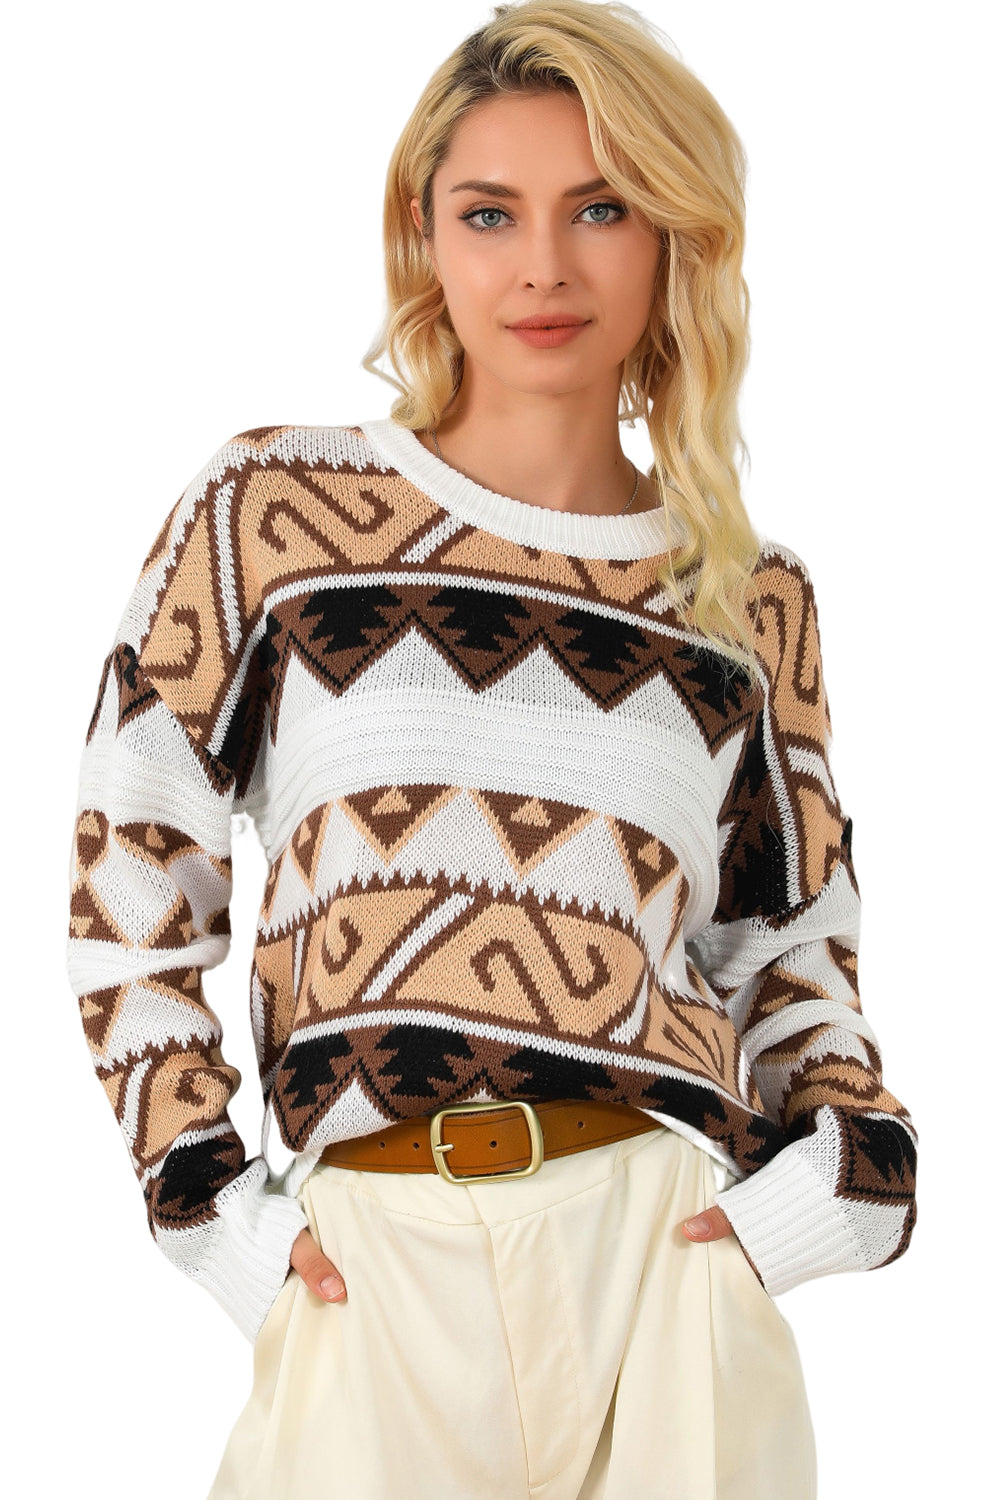 Večbarvni pulover z okroglim izrezom in z okroglim izrezom na ramenih